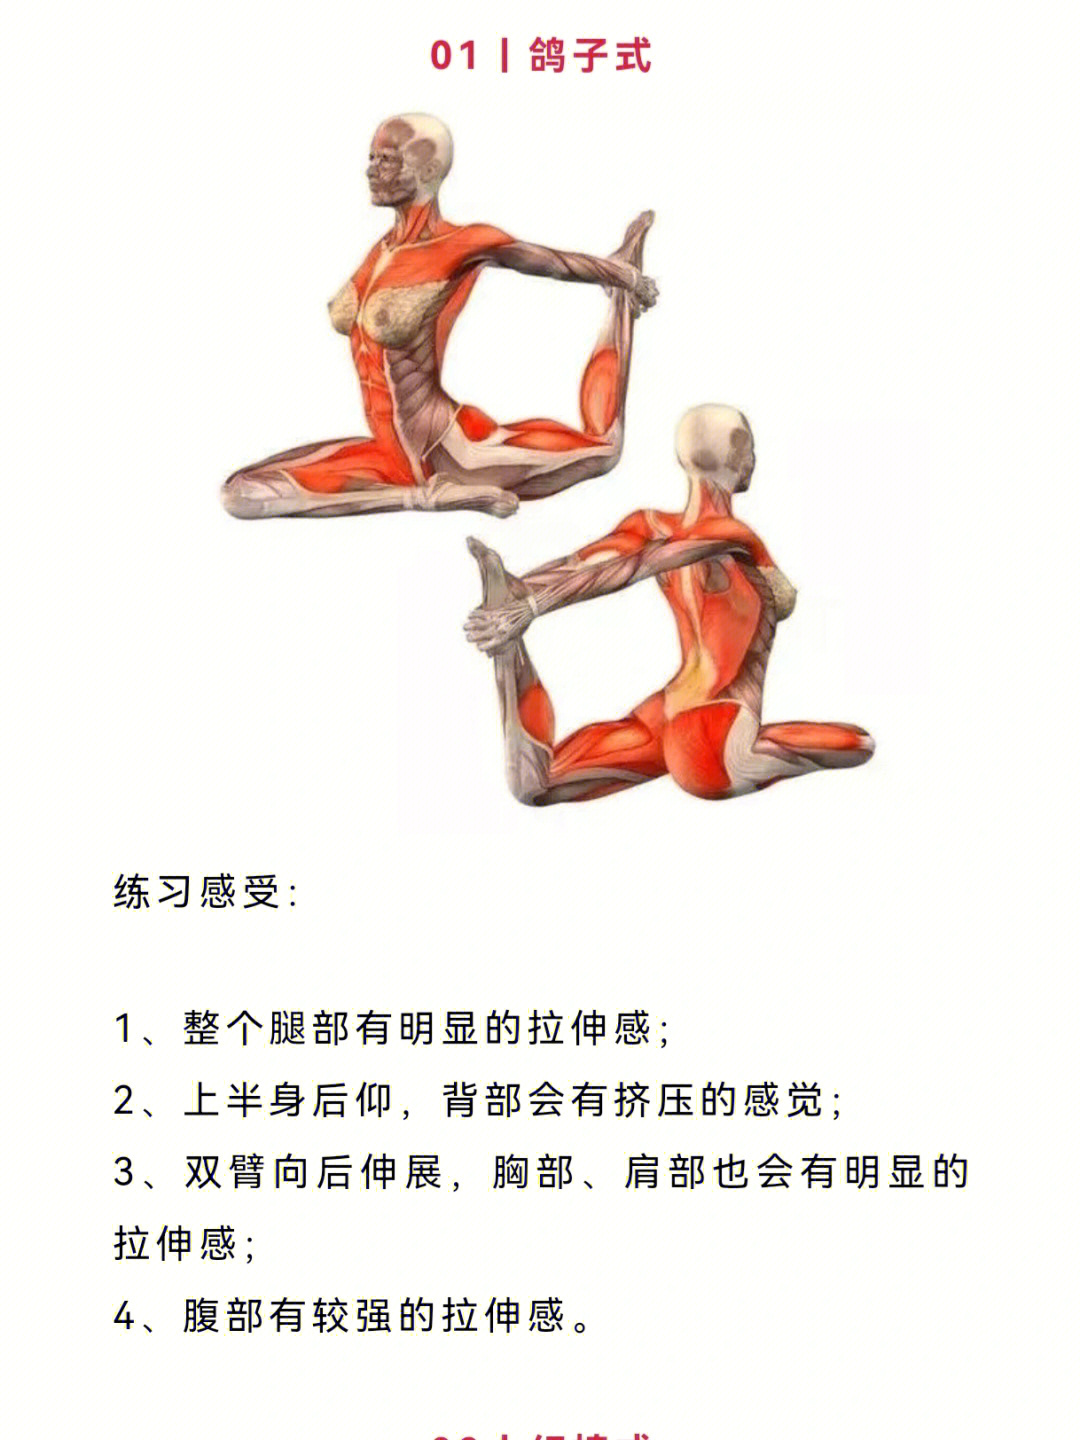 经典瑜伽体式高清解剖图收藏级